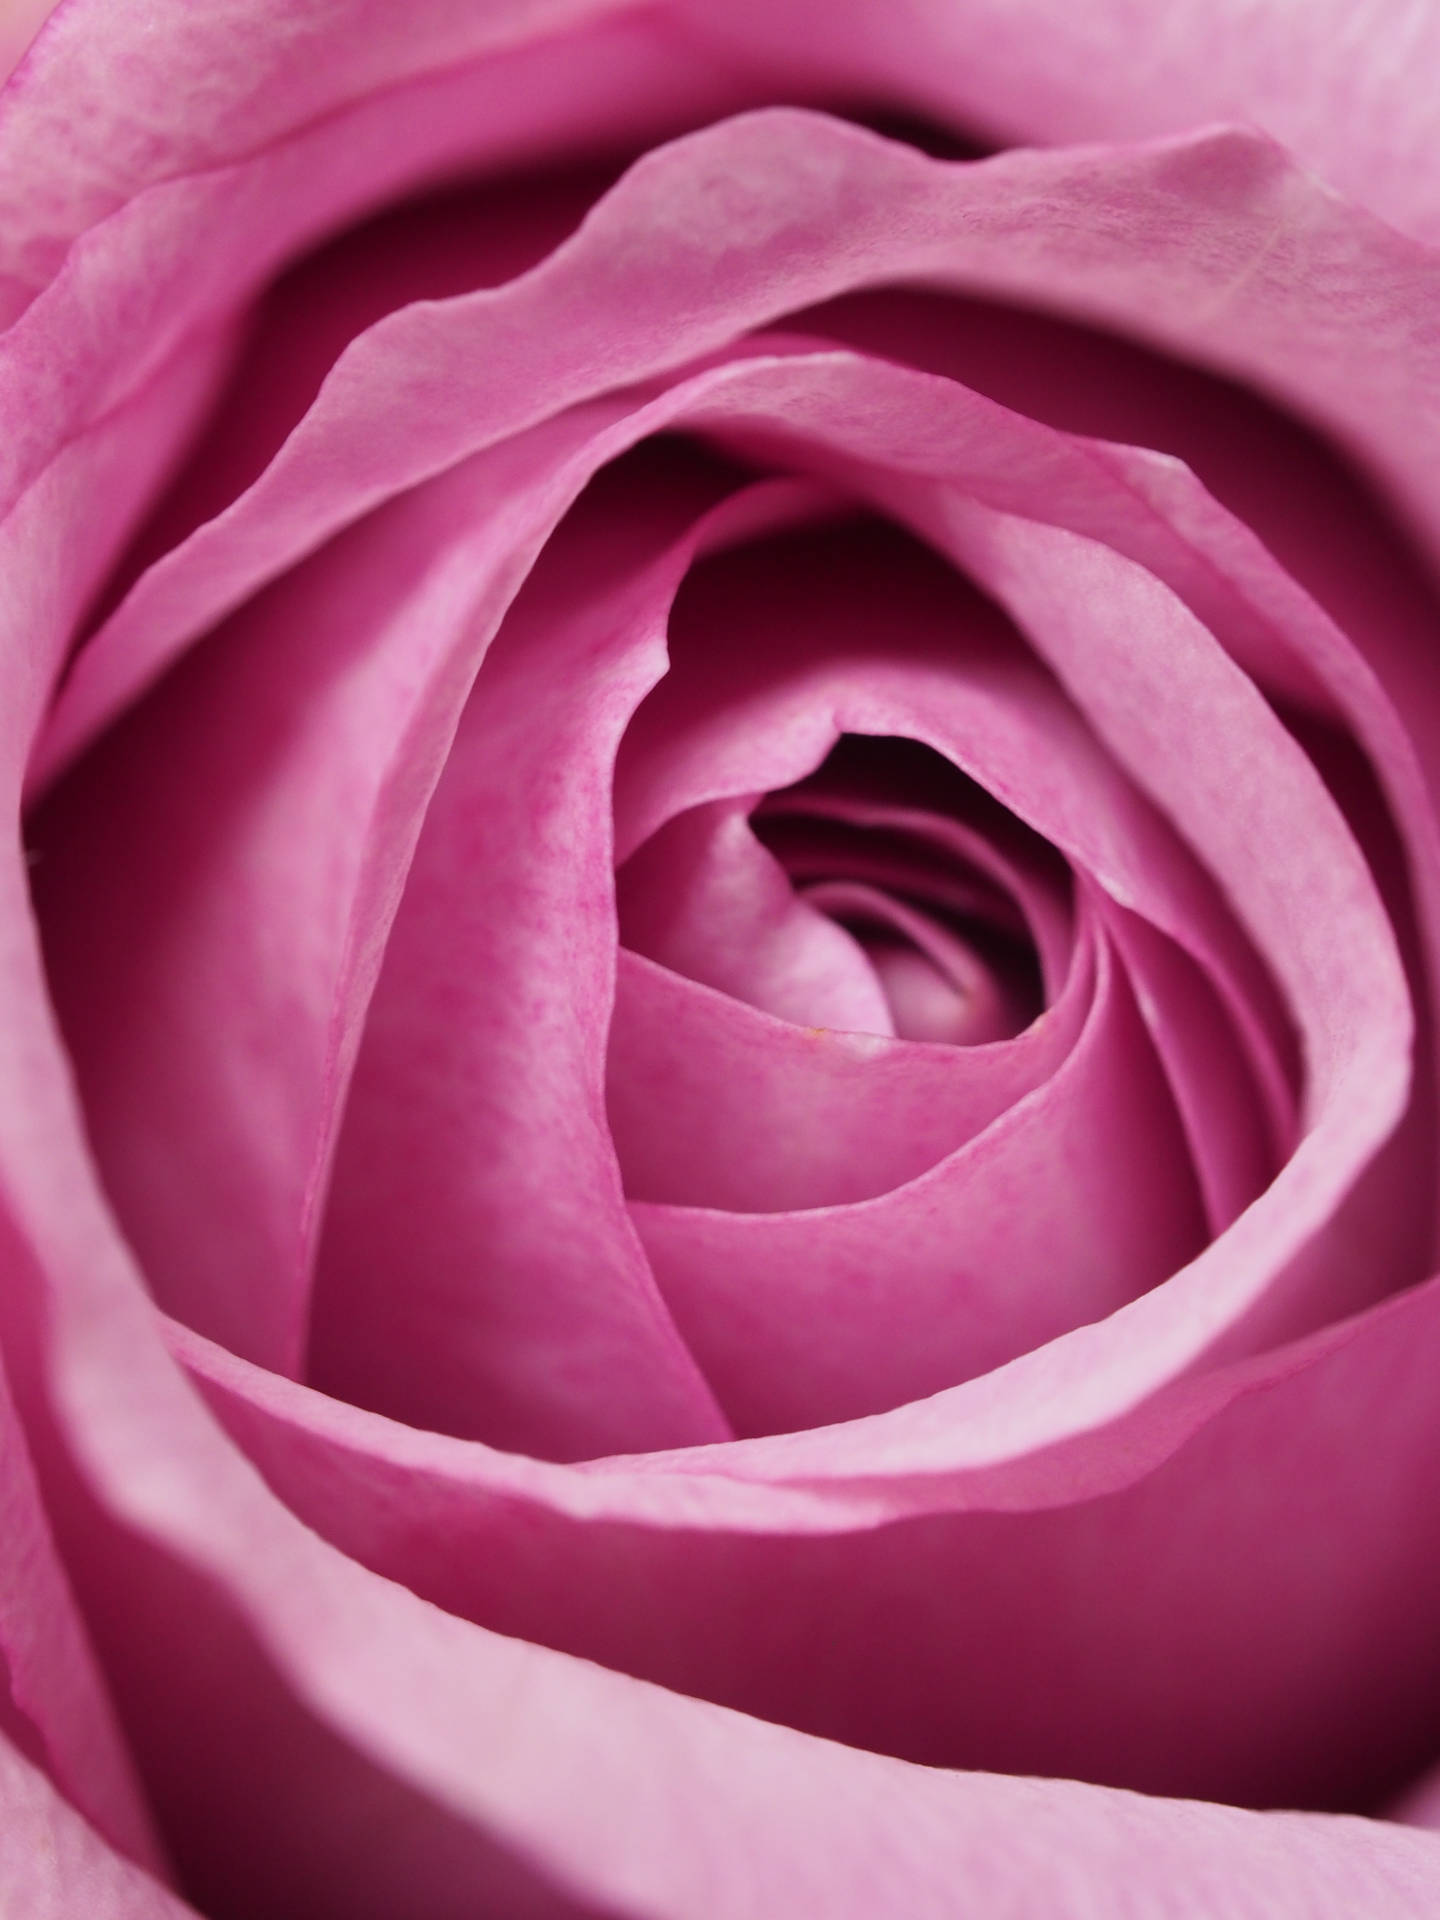 Massivpastellfärgad Rosa Ros. Wallpaper